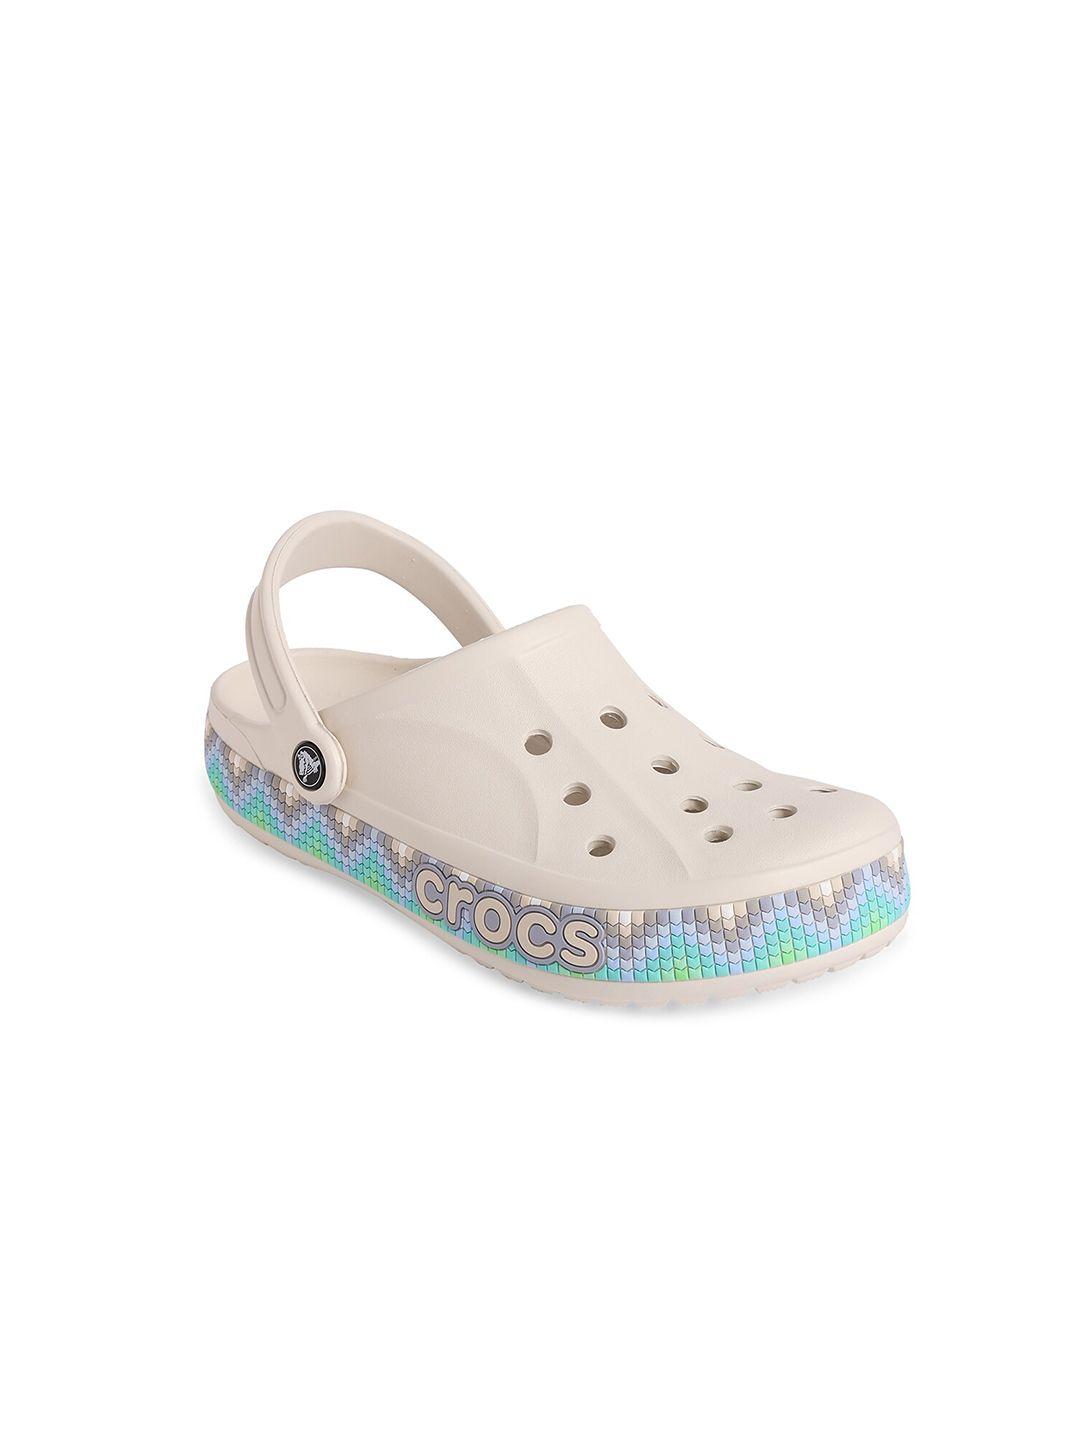 Crocs Adults Off White & Blue Clogs Sandals